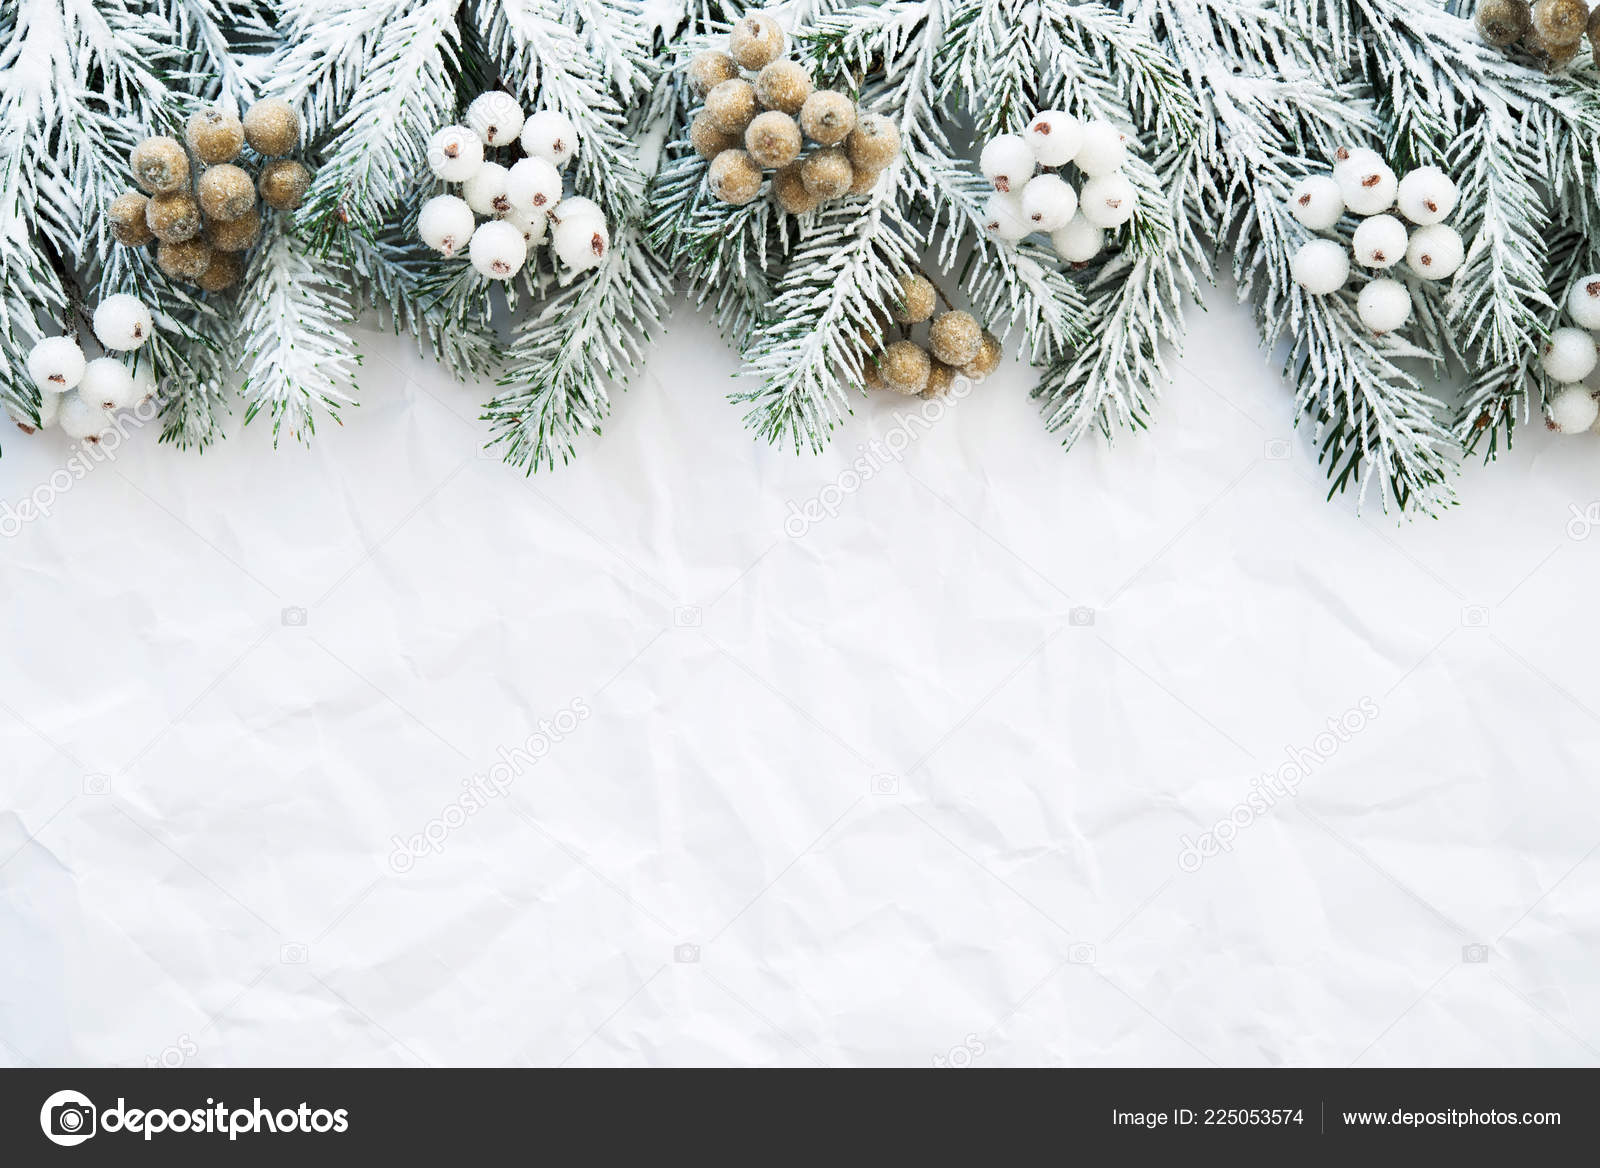 Chào mừng đến với mùa Giáng sinh! Bạn có muốn tận hưởng không khí lễ hội với nền trắng Giáng sinh tuyệt đẹp? Màu trắng thuần khiết sẽ làm cho món quà của bạn trở nên nổi bật hơn bao giờ hết. Hãy nhấp chuột để khám phá những hình ảnh độc đáo và đầy cảm hứng!